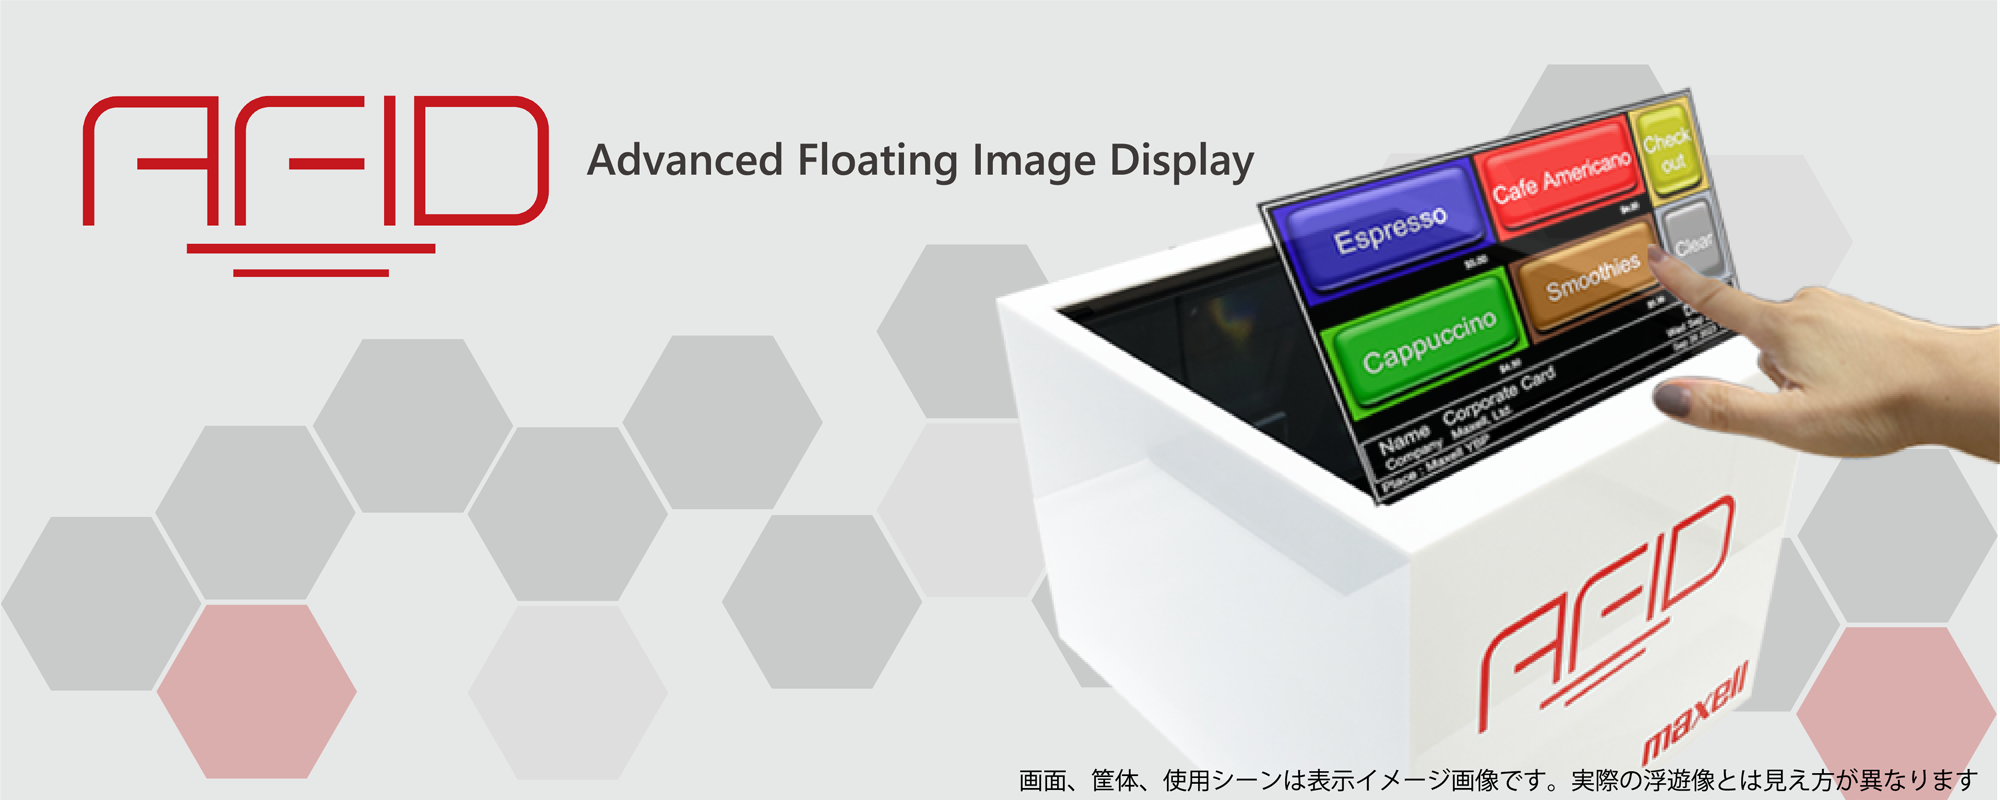 非接触/空中ディスプレイ：Advanced Floating Image Display（AFID)